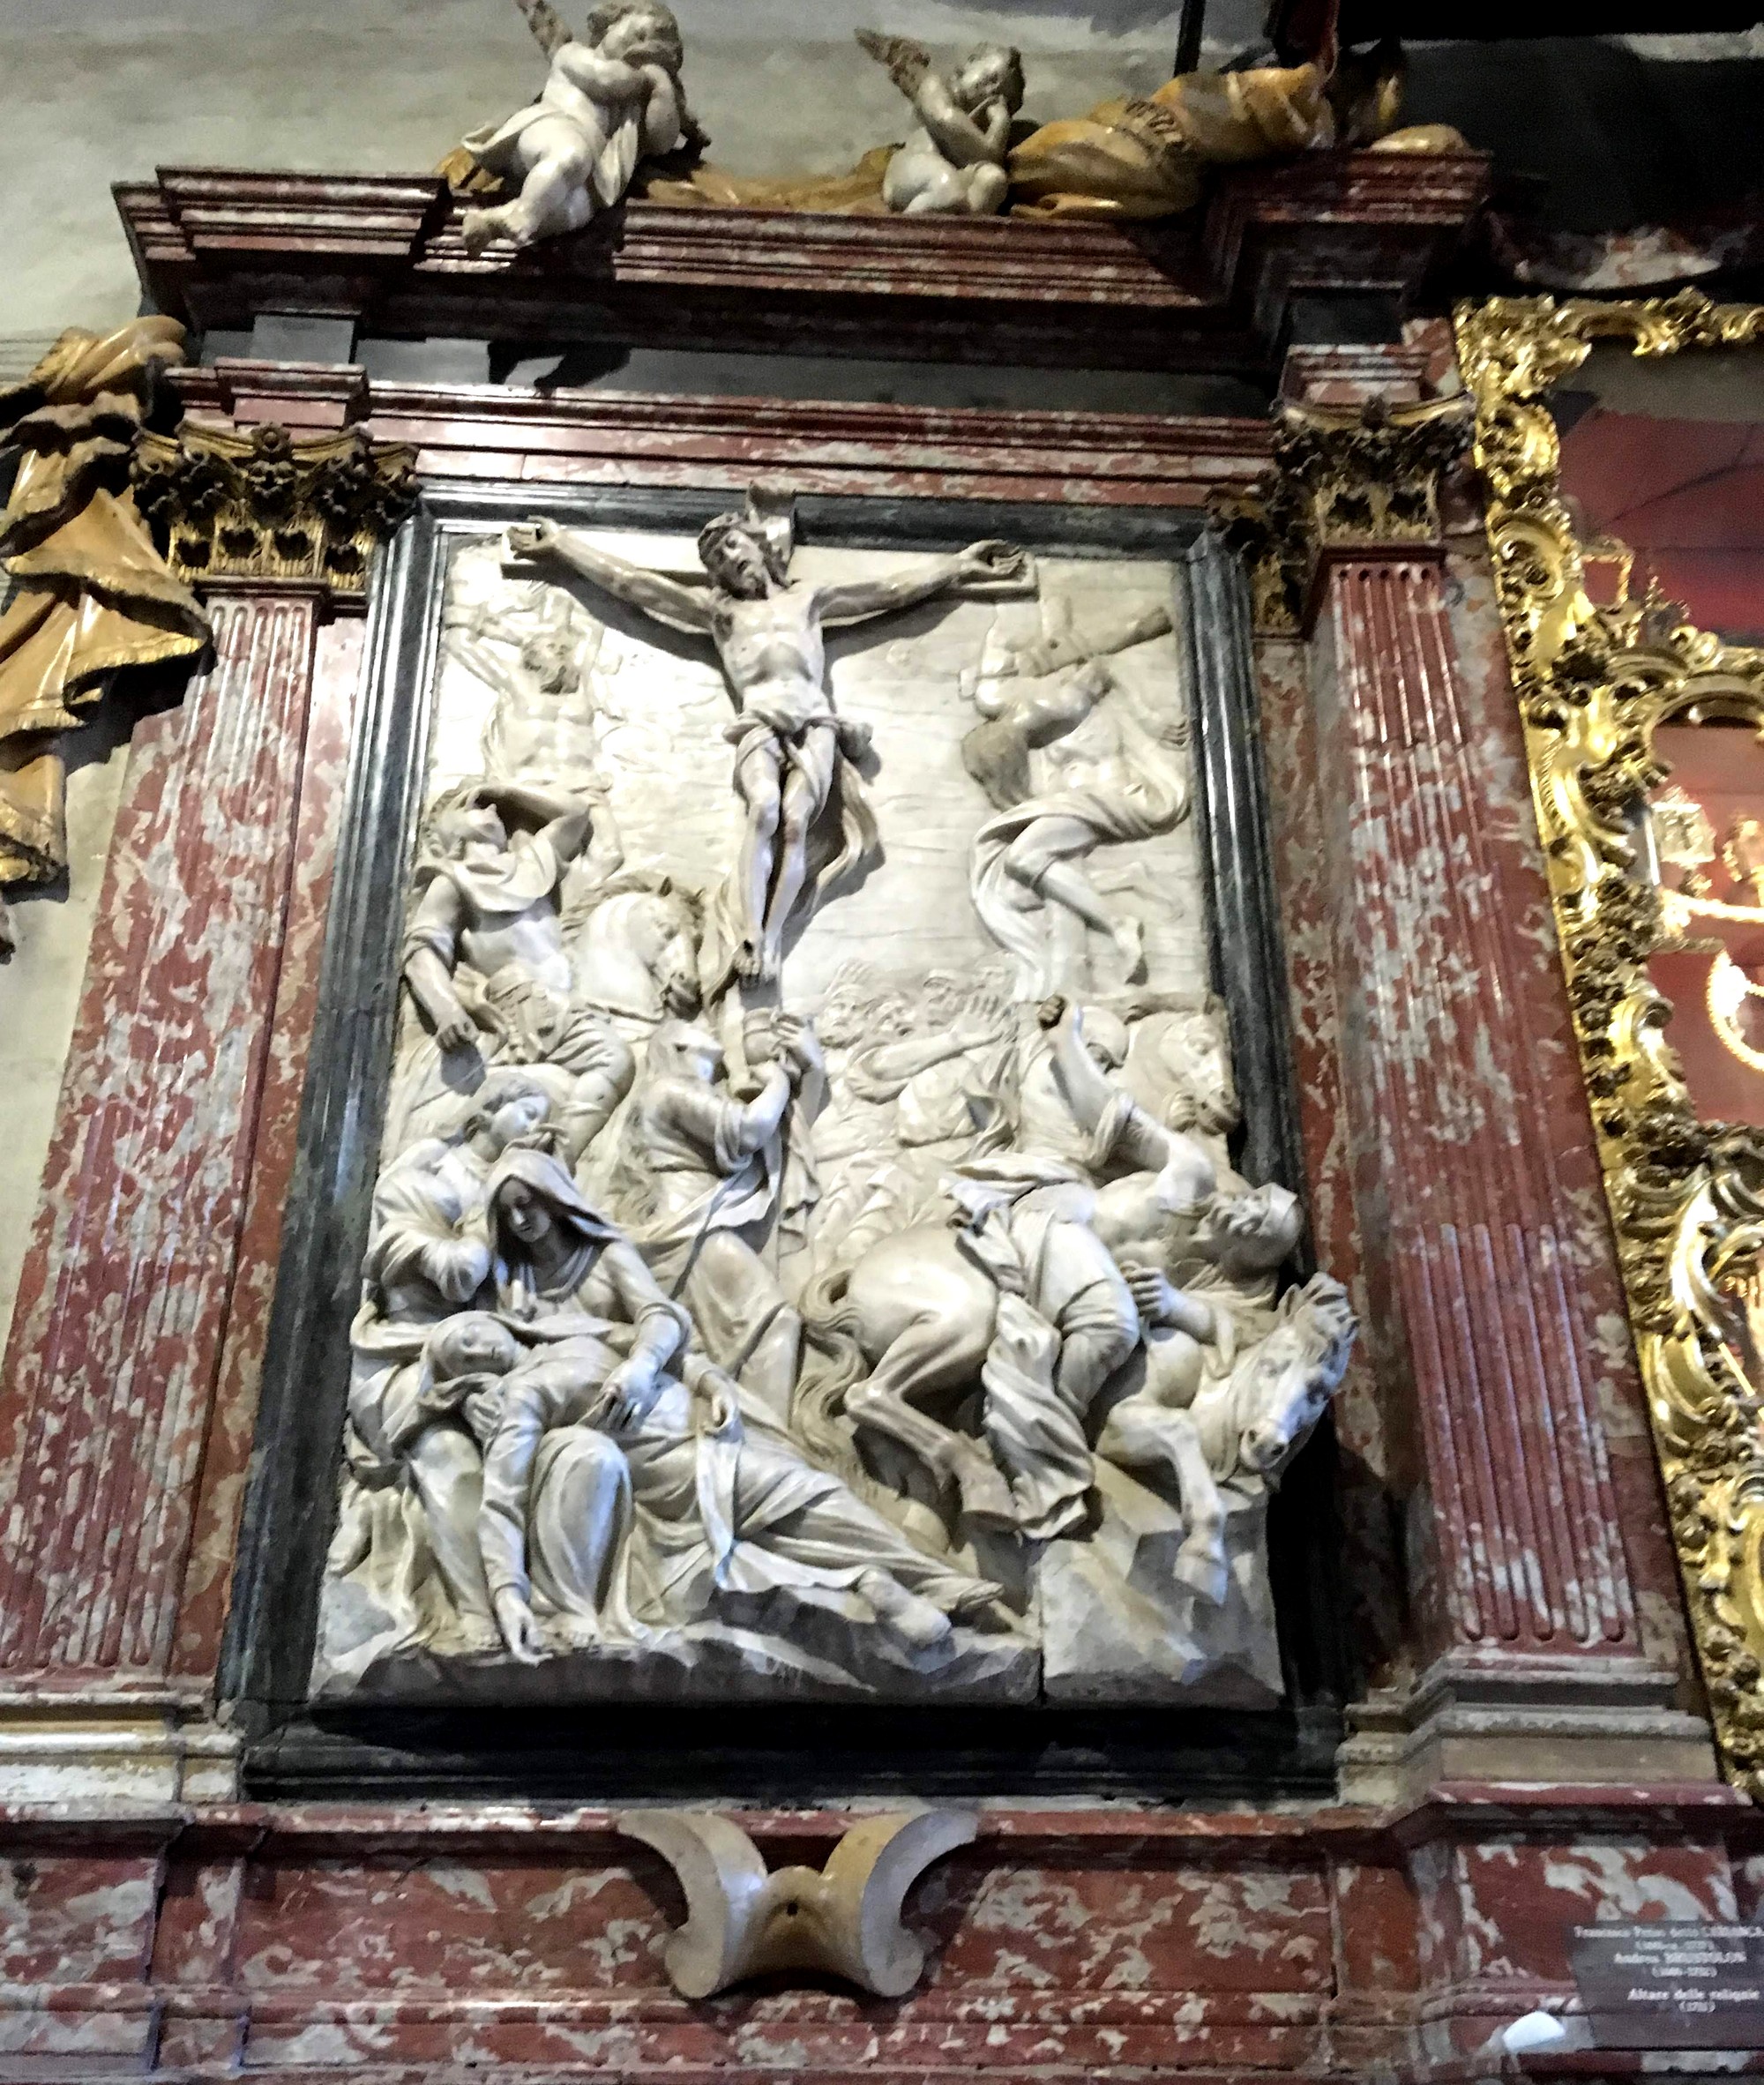 Объёмная икона в храме Италии